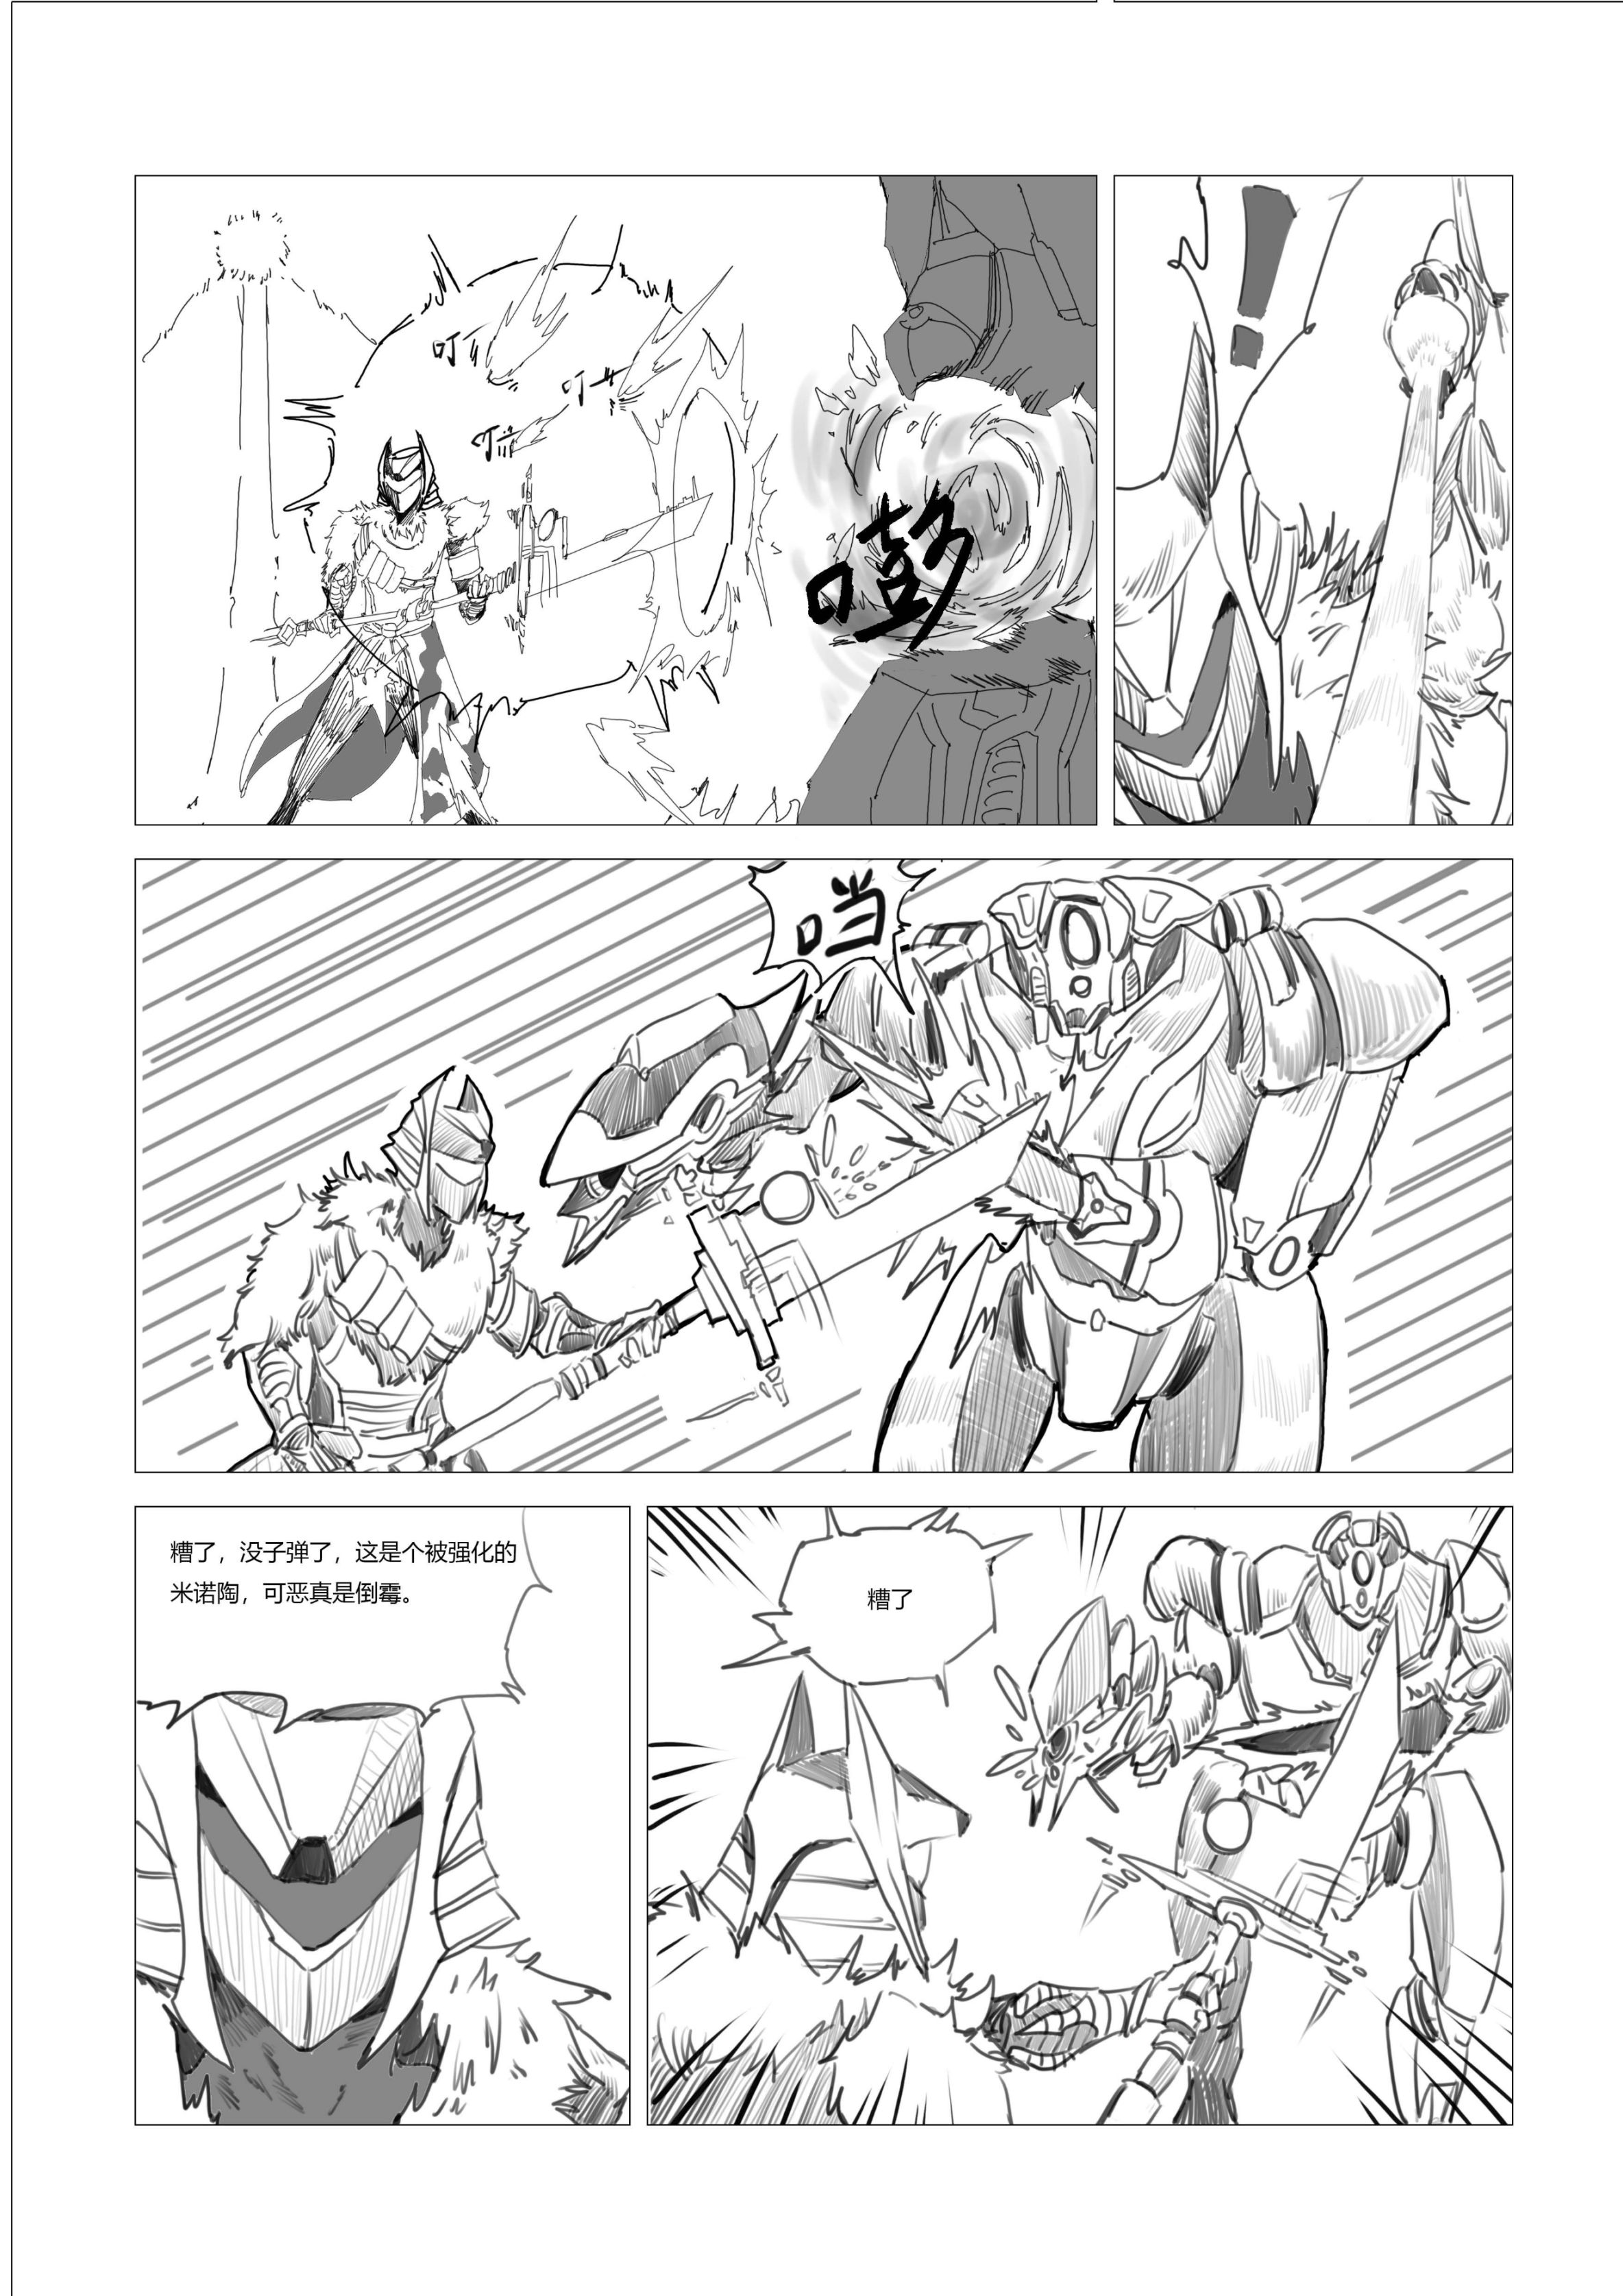 命运2原创战斗漫画（不止于战斗）28页-第10张